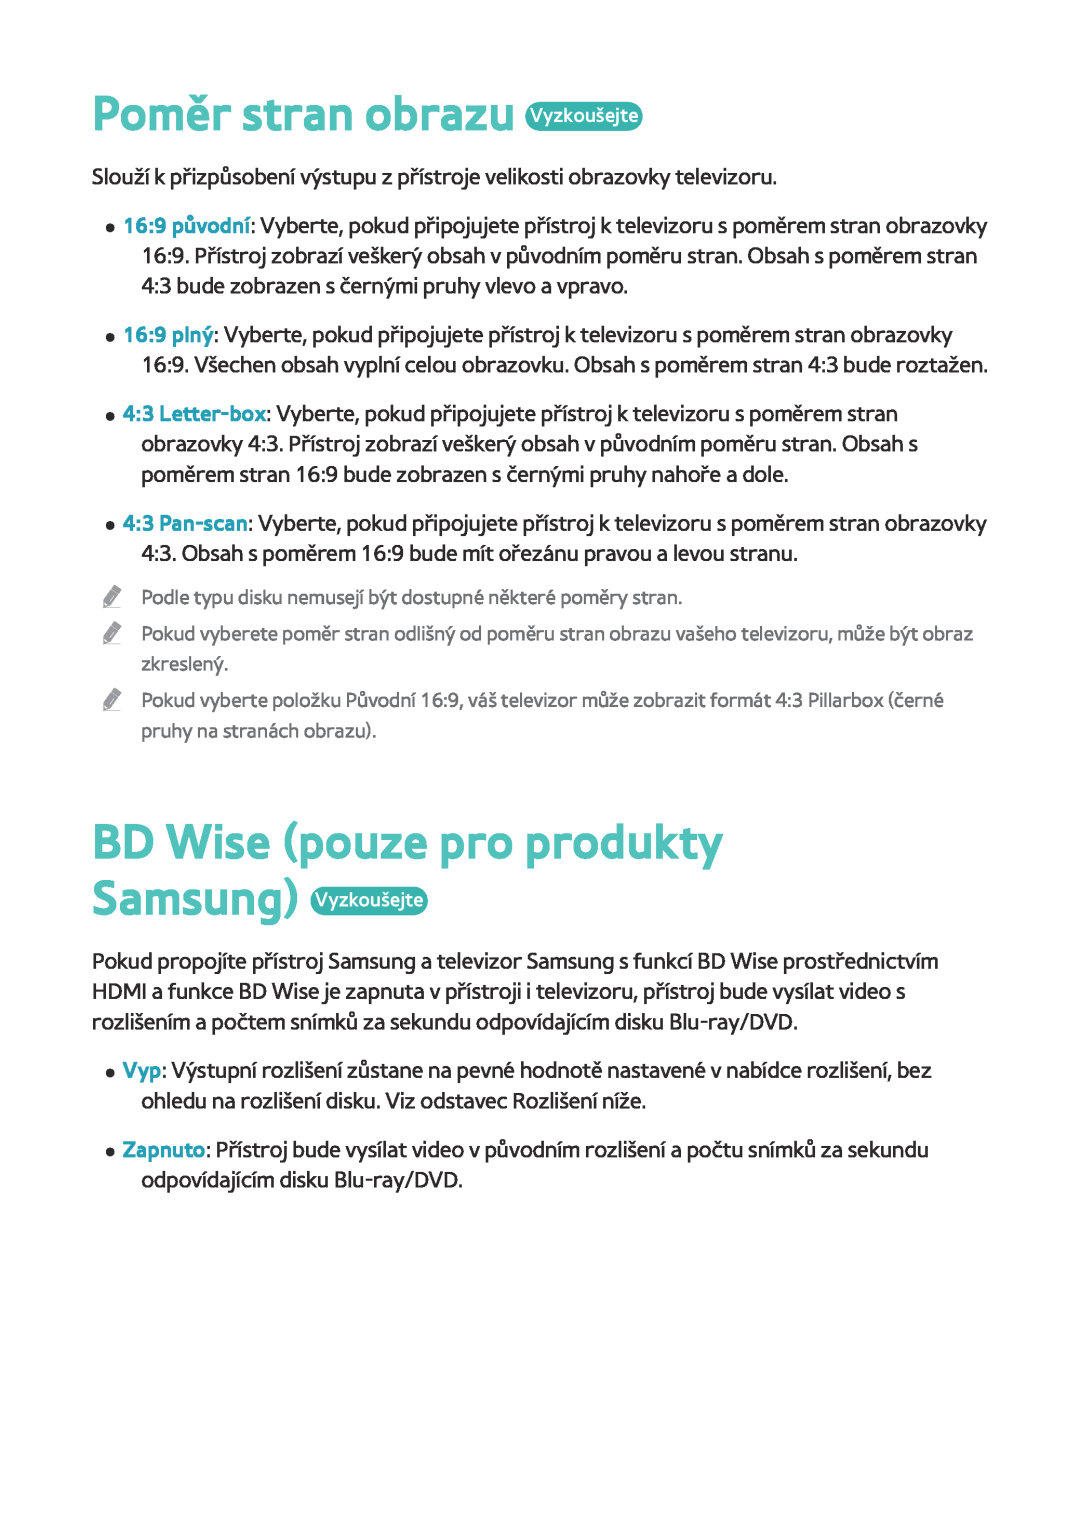 Samsung BD-F8500/EN, BD-F8900/EN manual Poměr stran obrazu Vyzkoušejte, BD Wise pouze pro produkty, Samsung Vyzkoušejte 